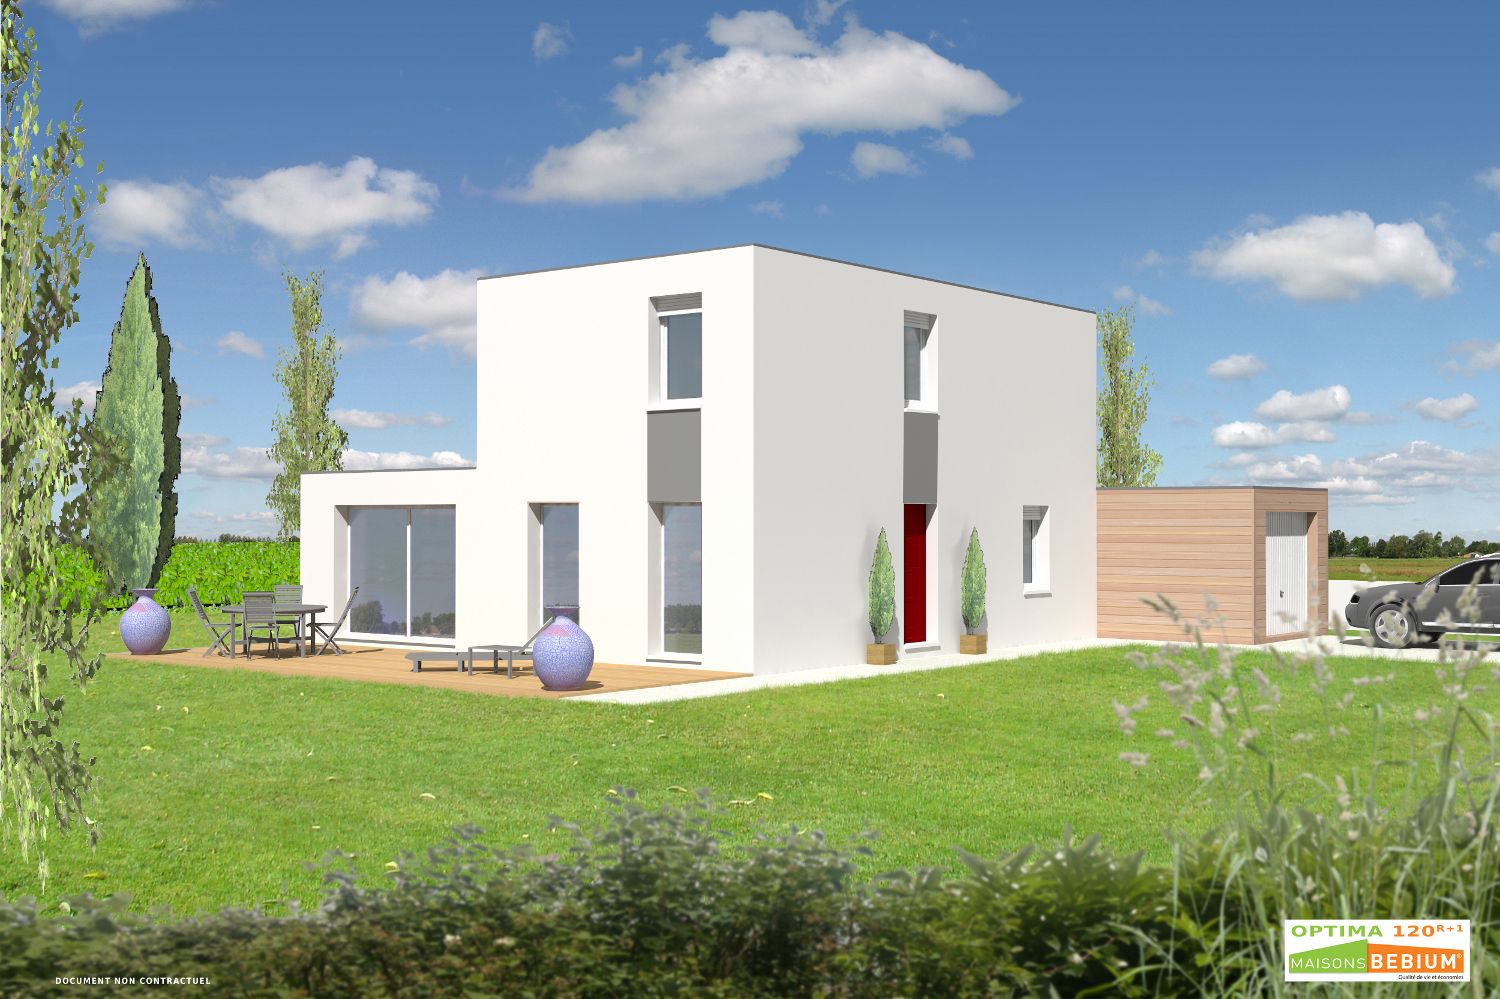 Faire construire une maison bioclimatique-prête à vivre -MAISONS BEBIUM